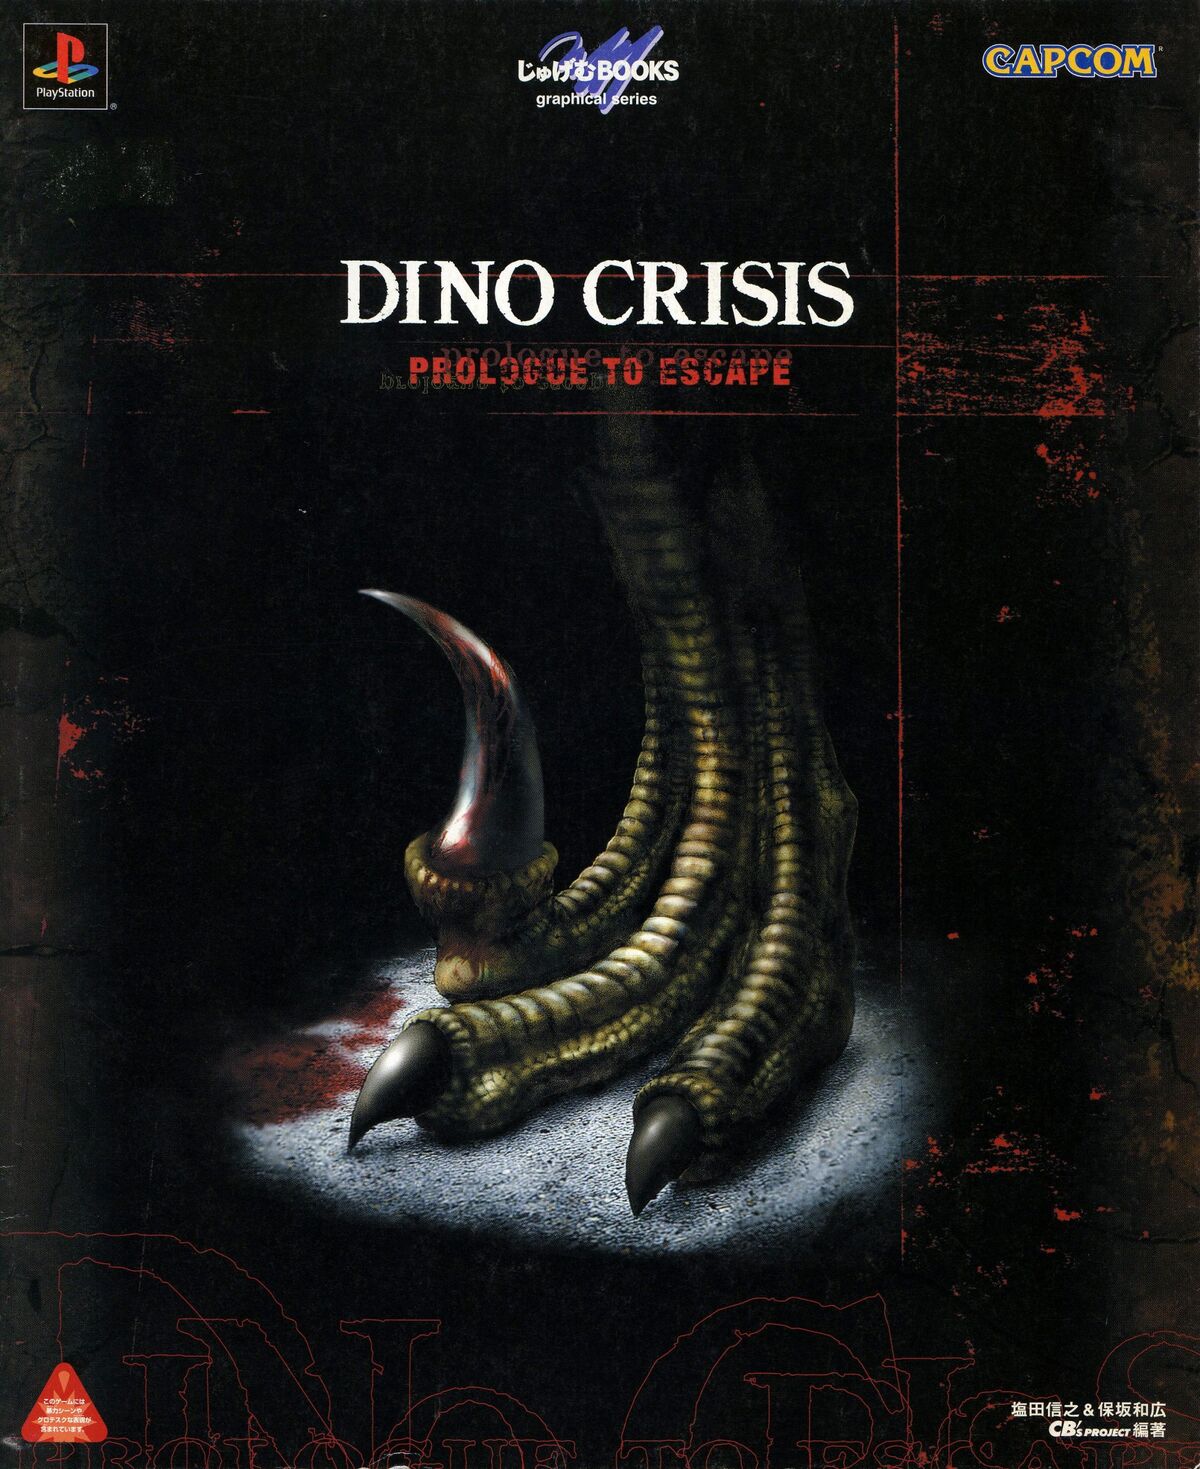 Exoprimal revoltou fãs de Dino Crisis em seu anúncio